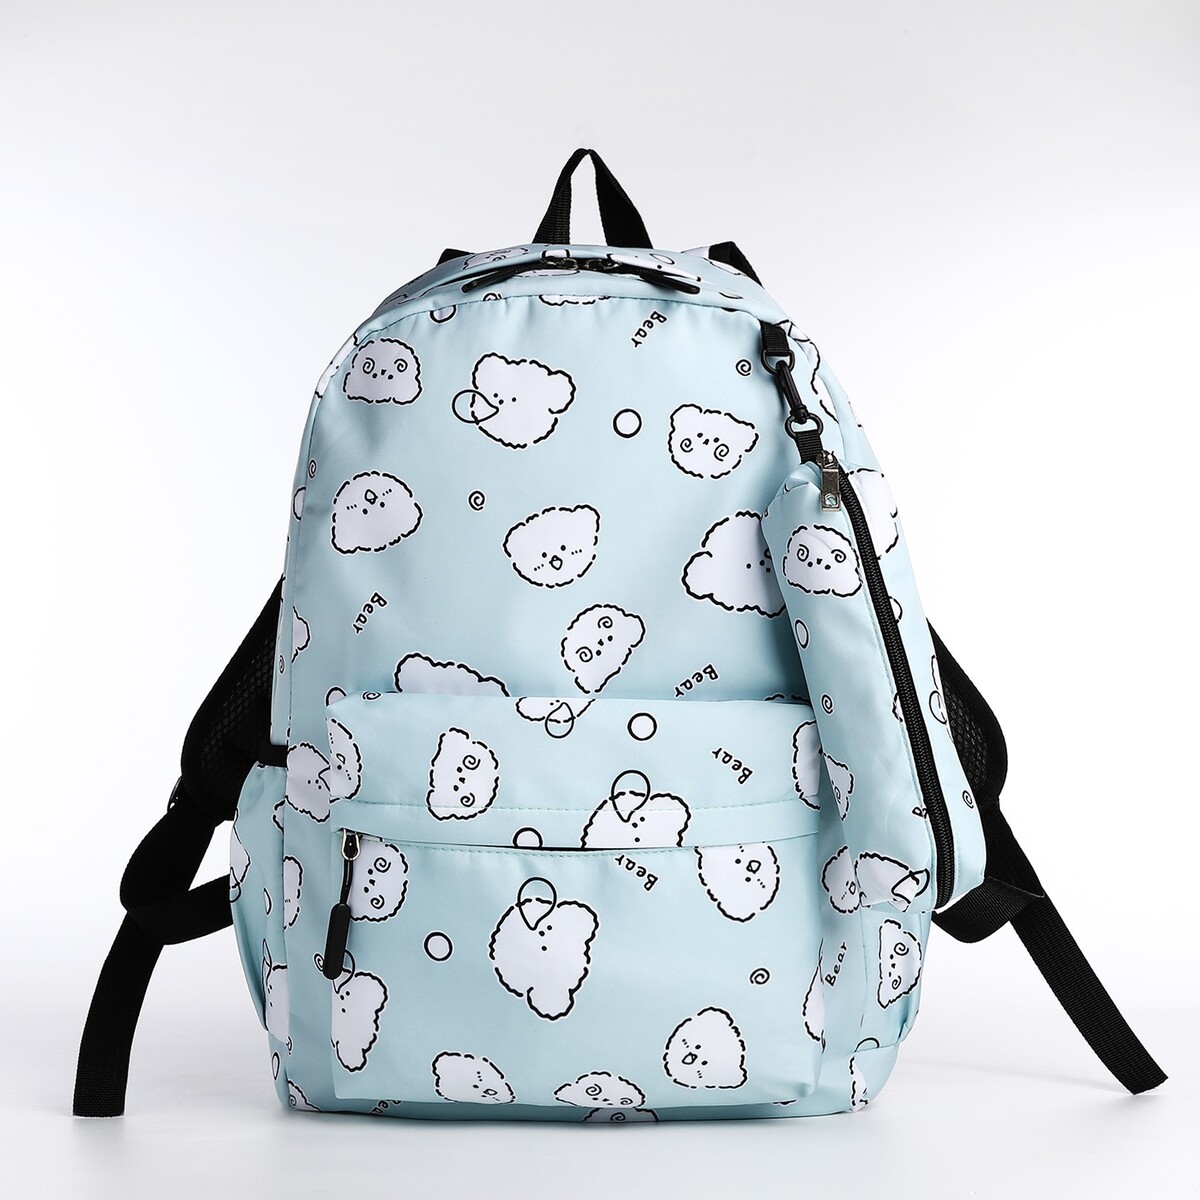 Набор рюкзак школьный из текстиля на молнии, 3 кармана, пенал, цвет бирюзовый